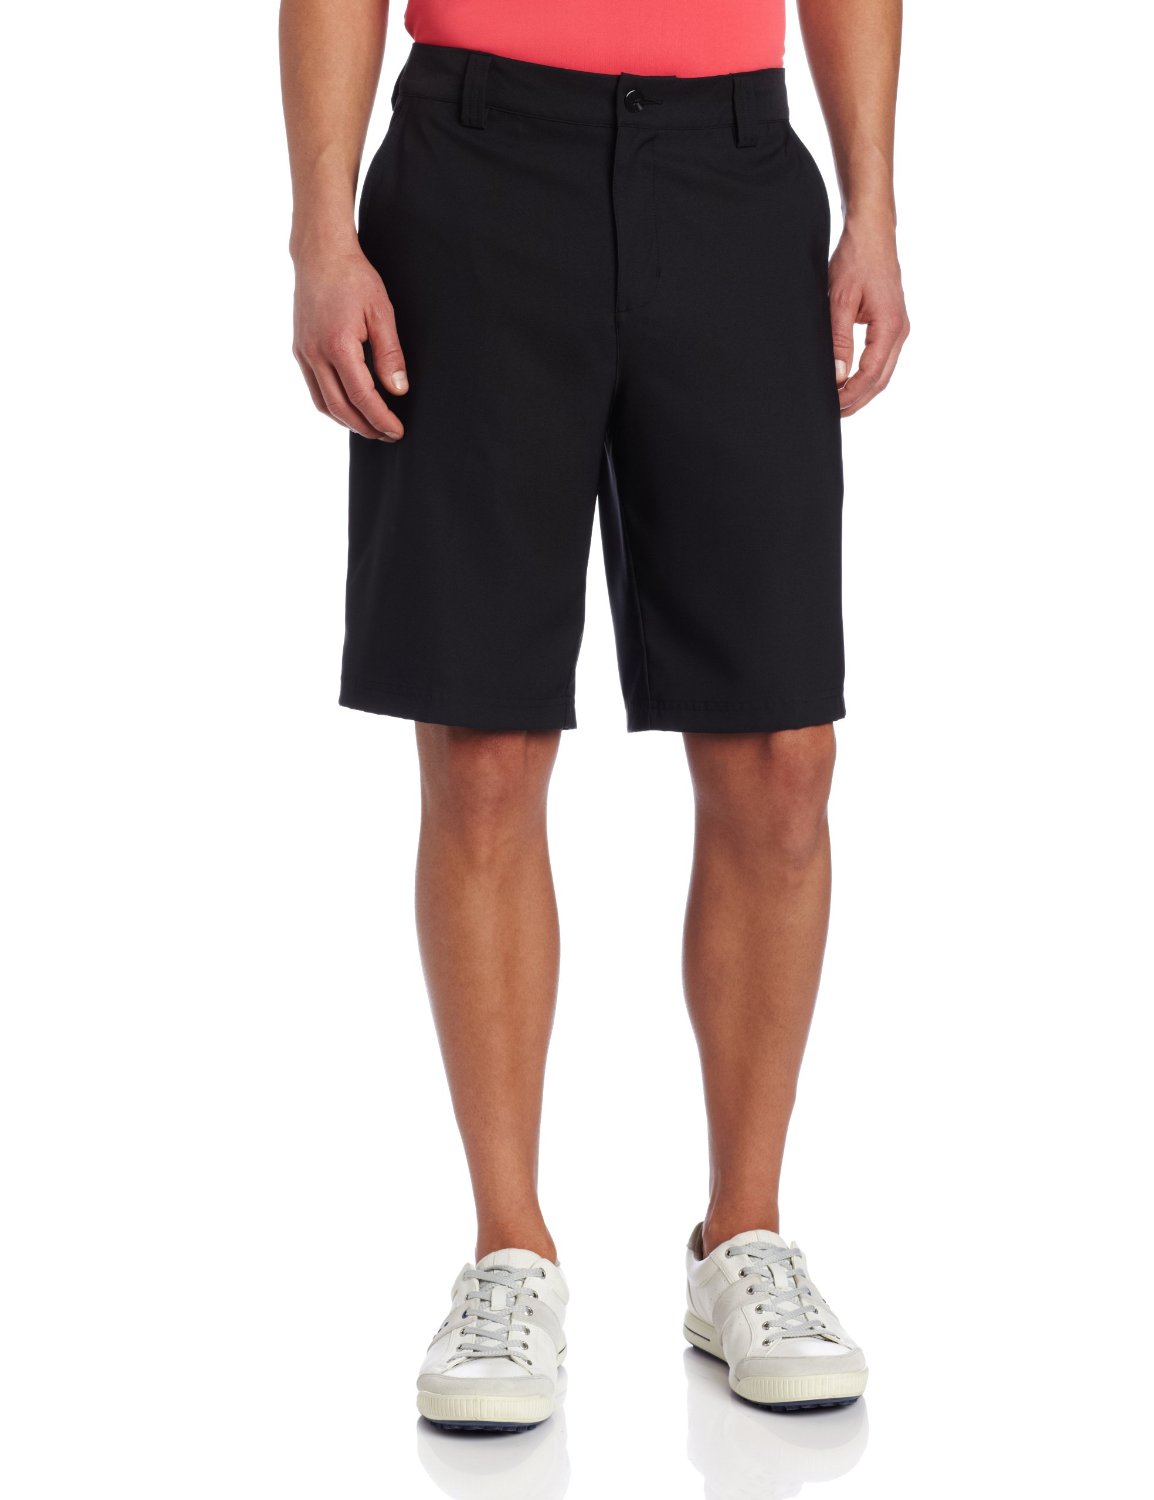 Adidas Mens Climalite Flat Front Golf Shorts